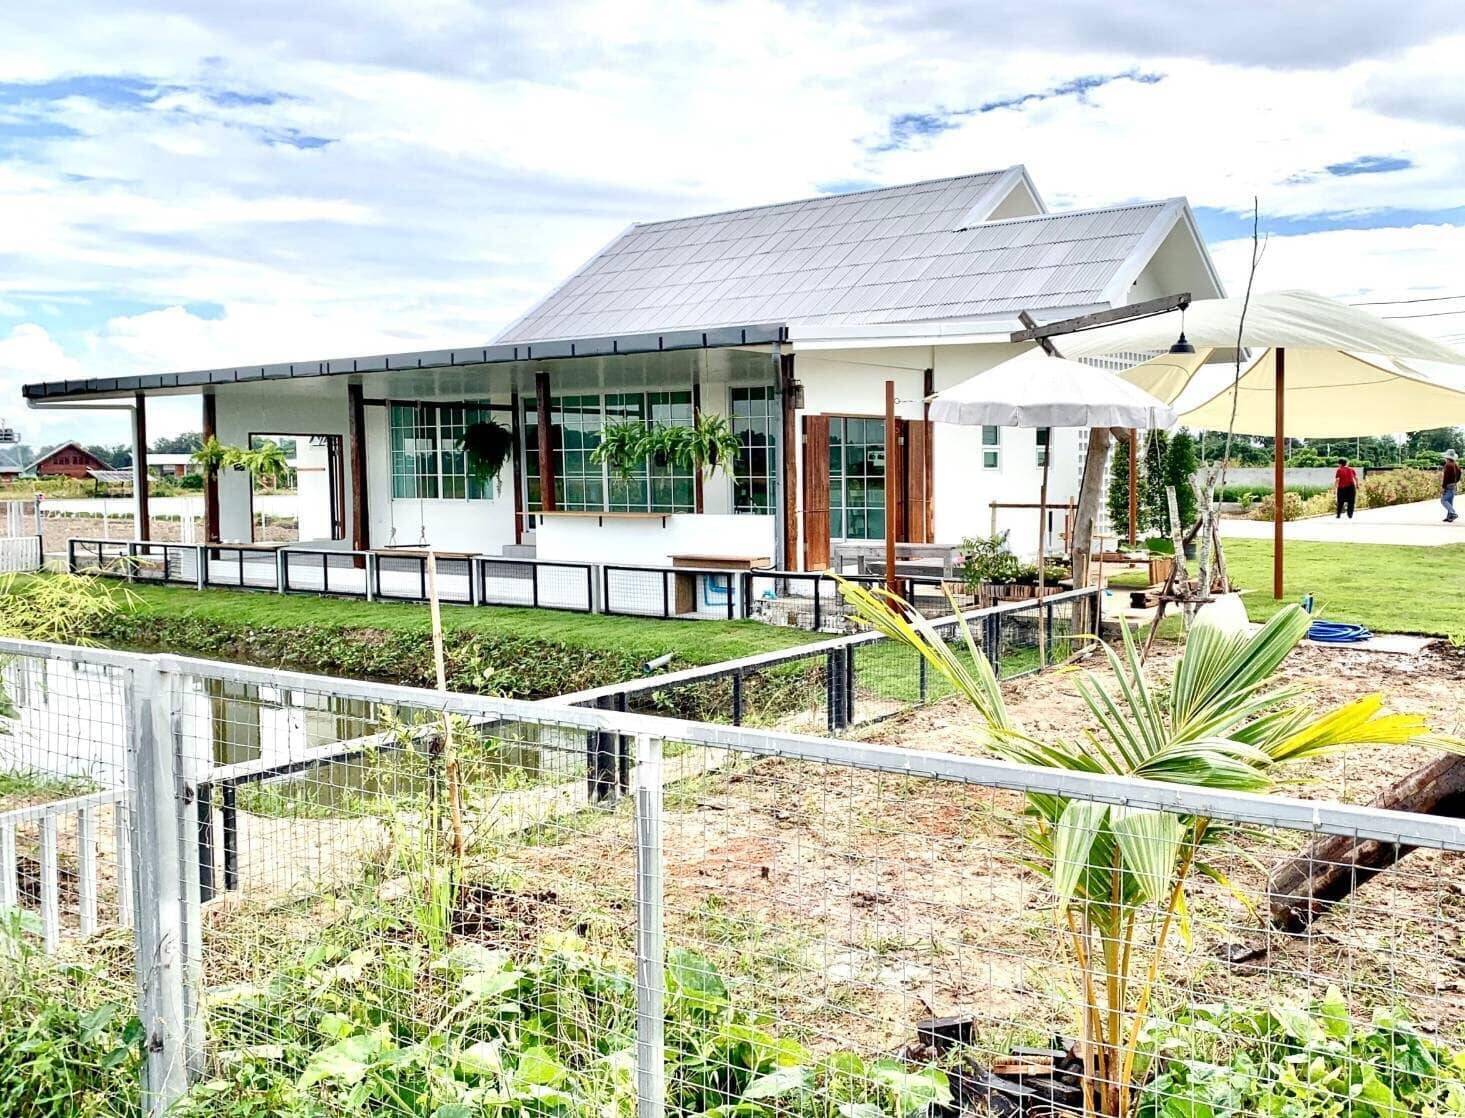  Công ty xây nhà trọn gói tại Cần Thơ với mẫu nhà cấp 4 ở quê - cuộc sống bình yên, cùng trồng rau và nuôi cá